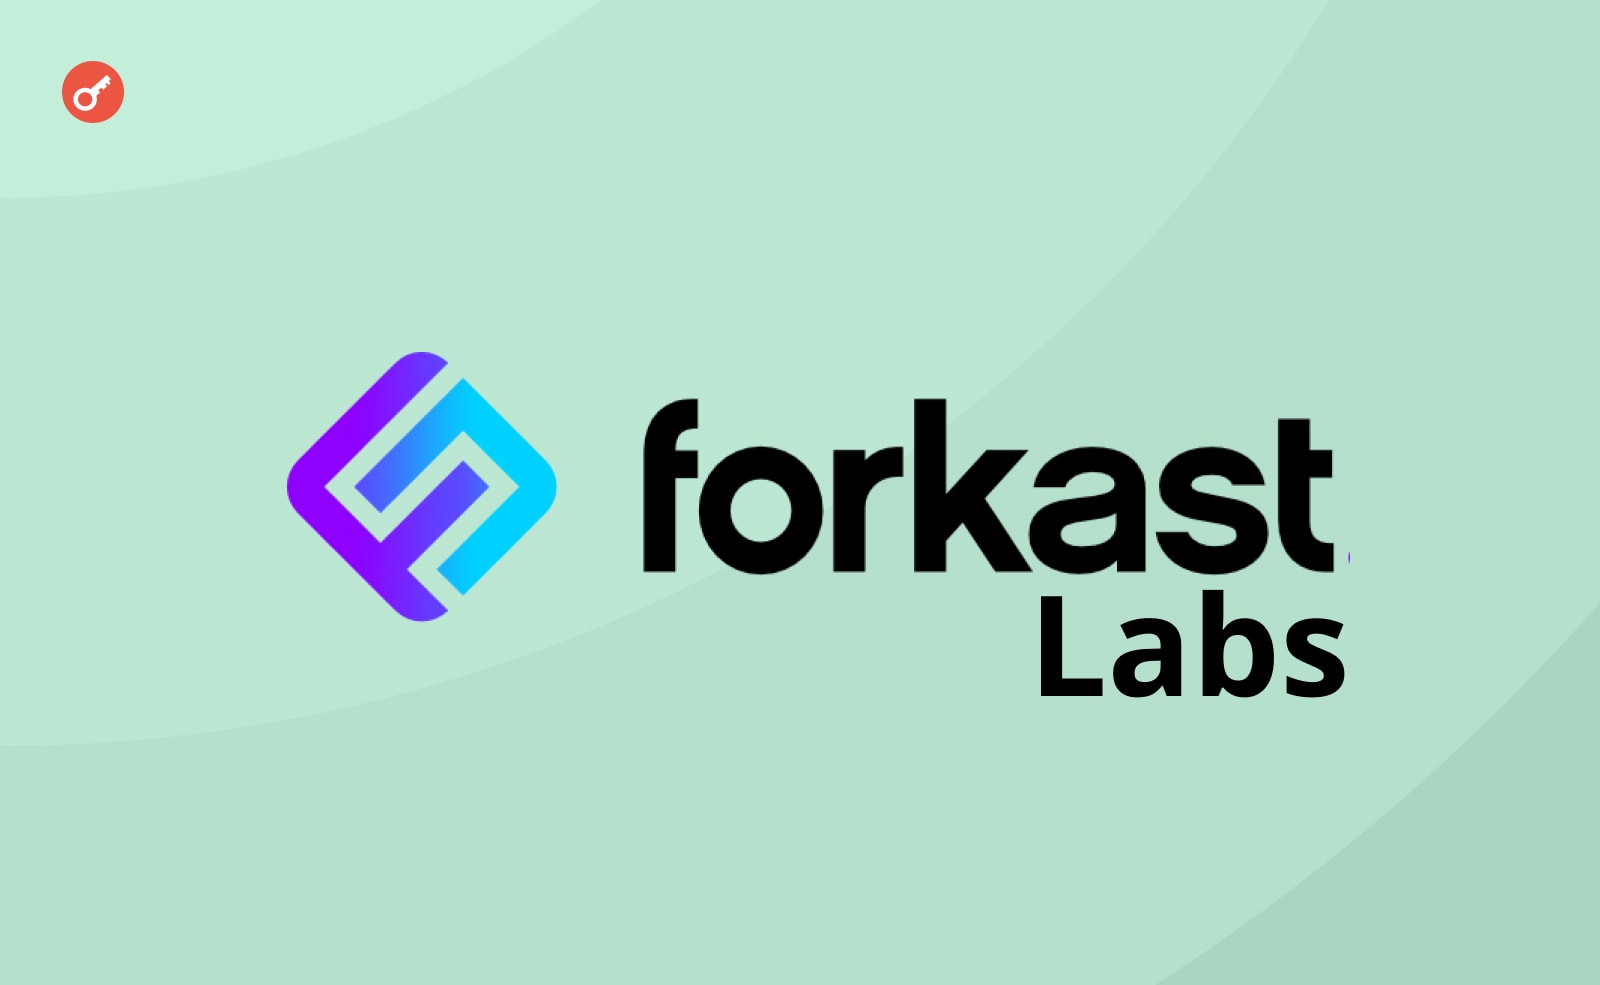 Forkast Labs створили «криптоеквівалент» індексу S&P 500 для NFT. Головний колаж новини.